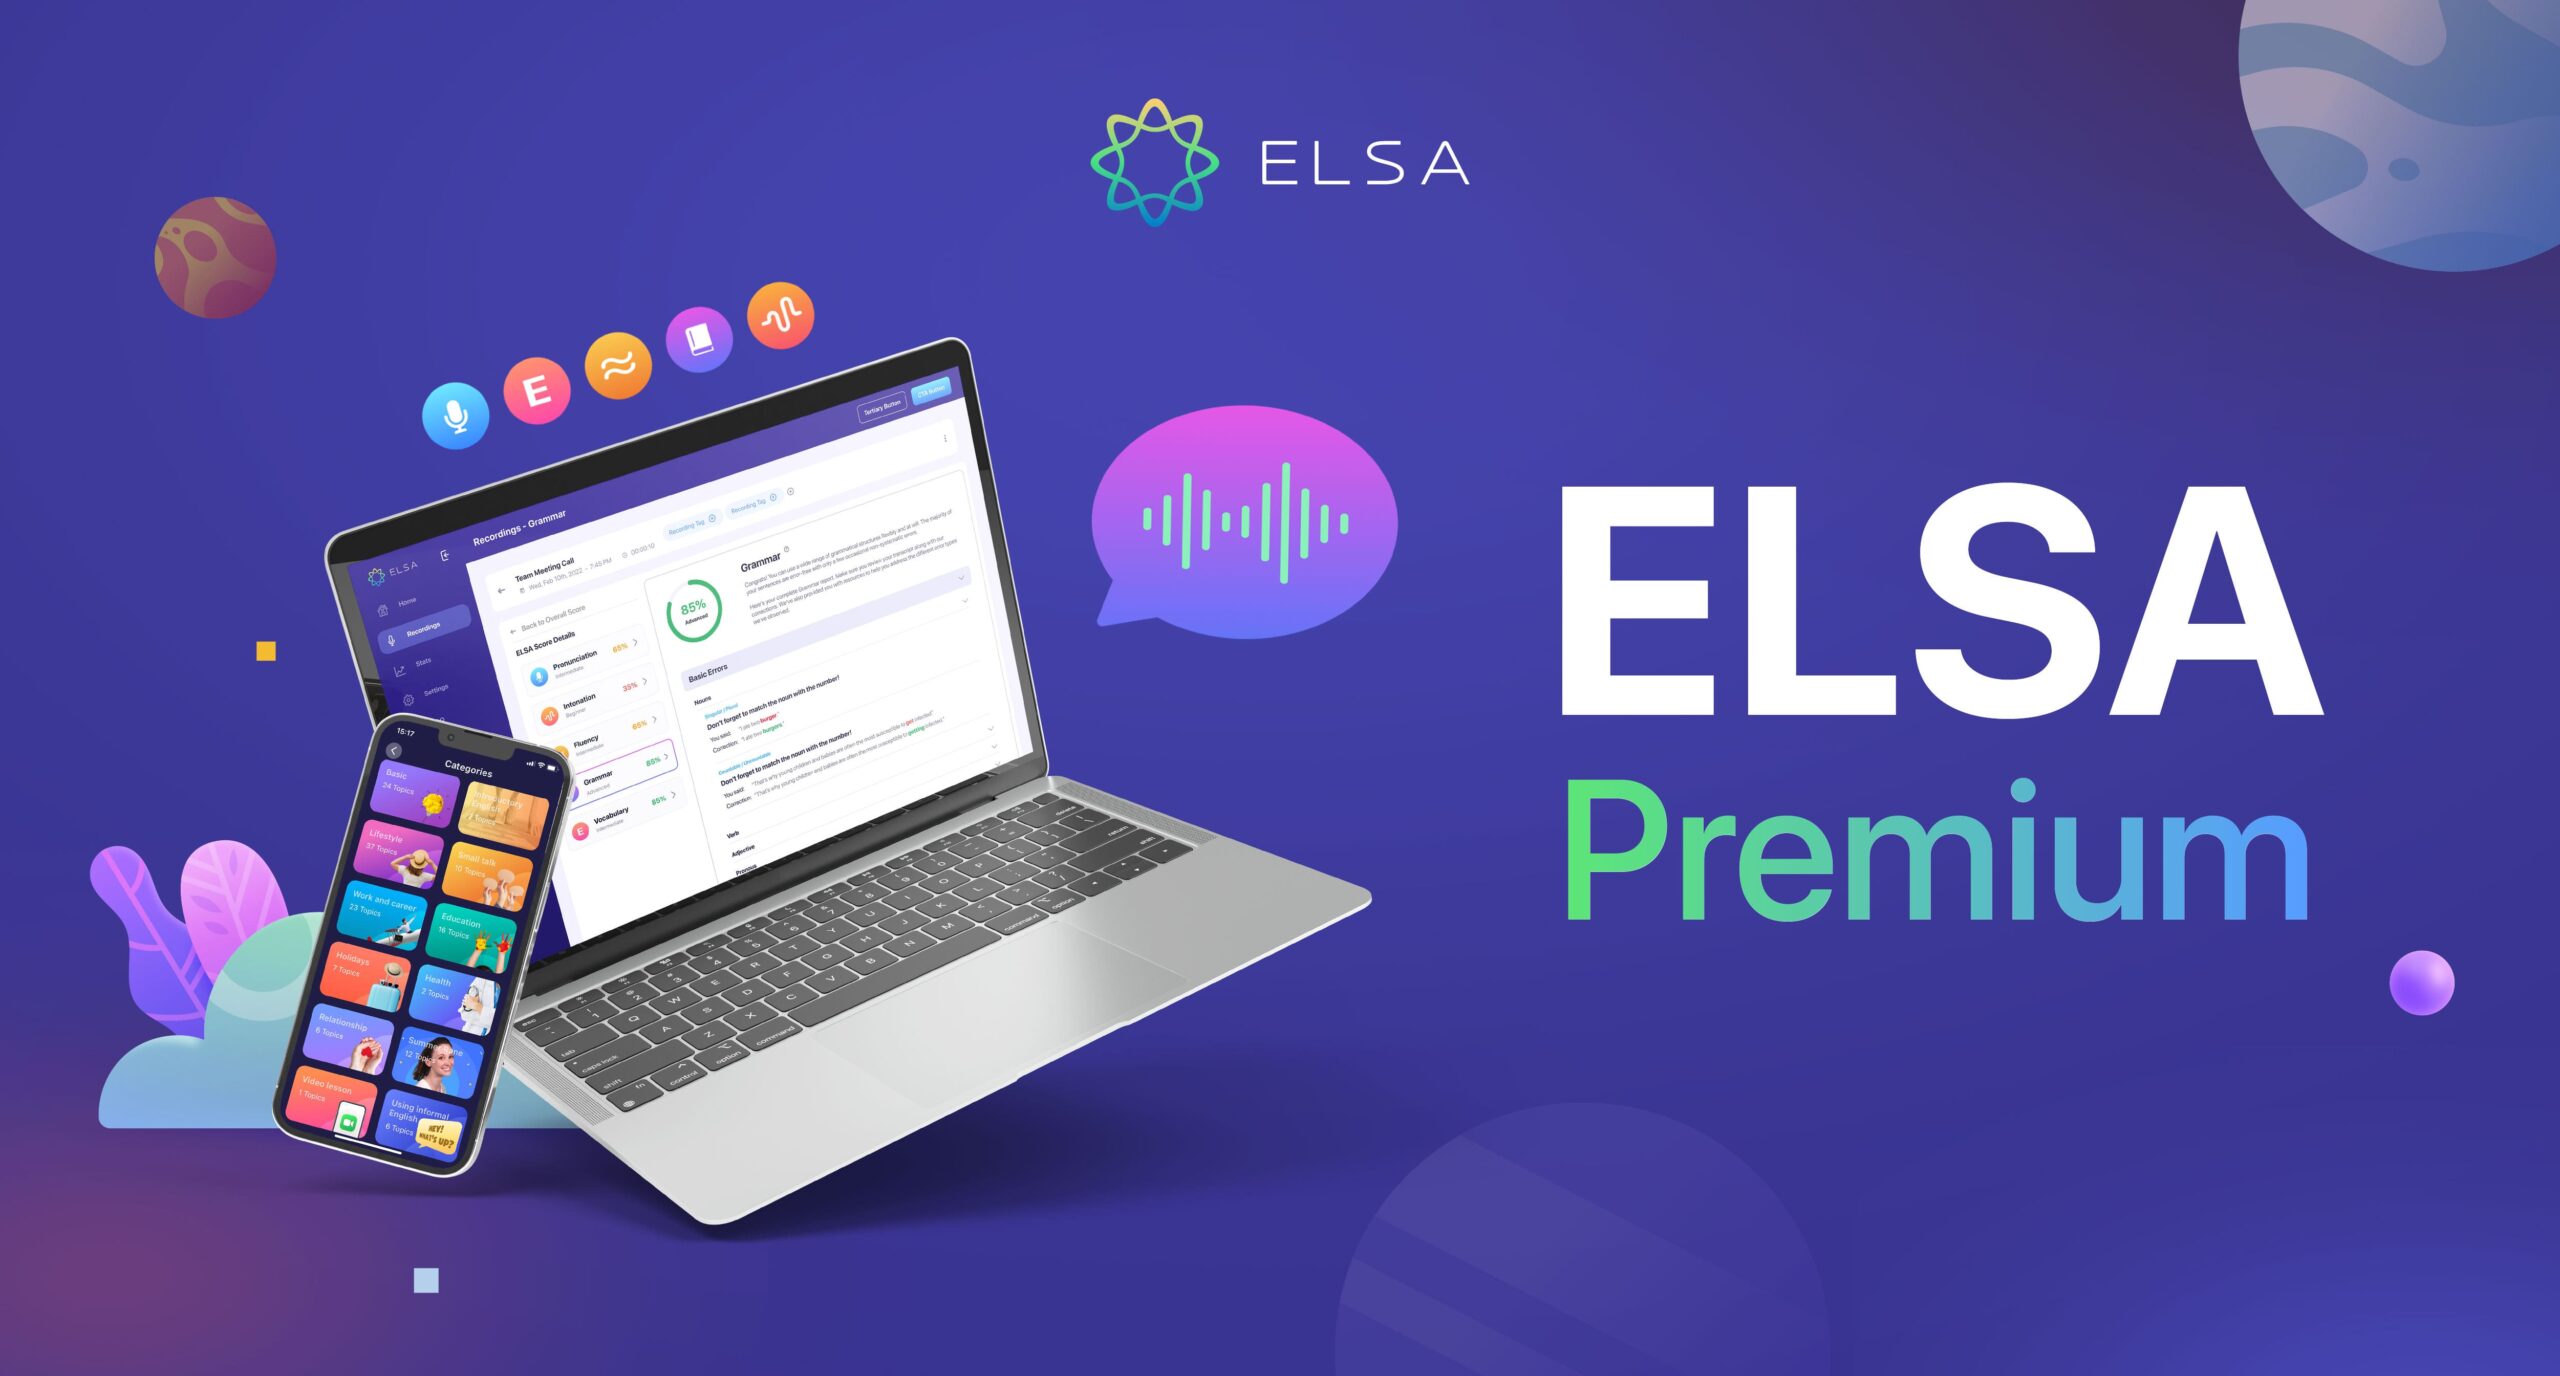 ELSA Premium